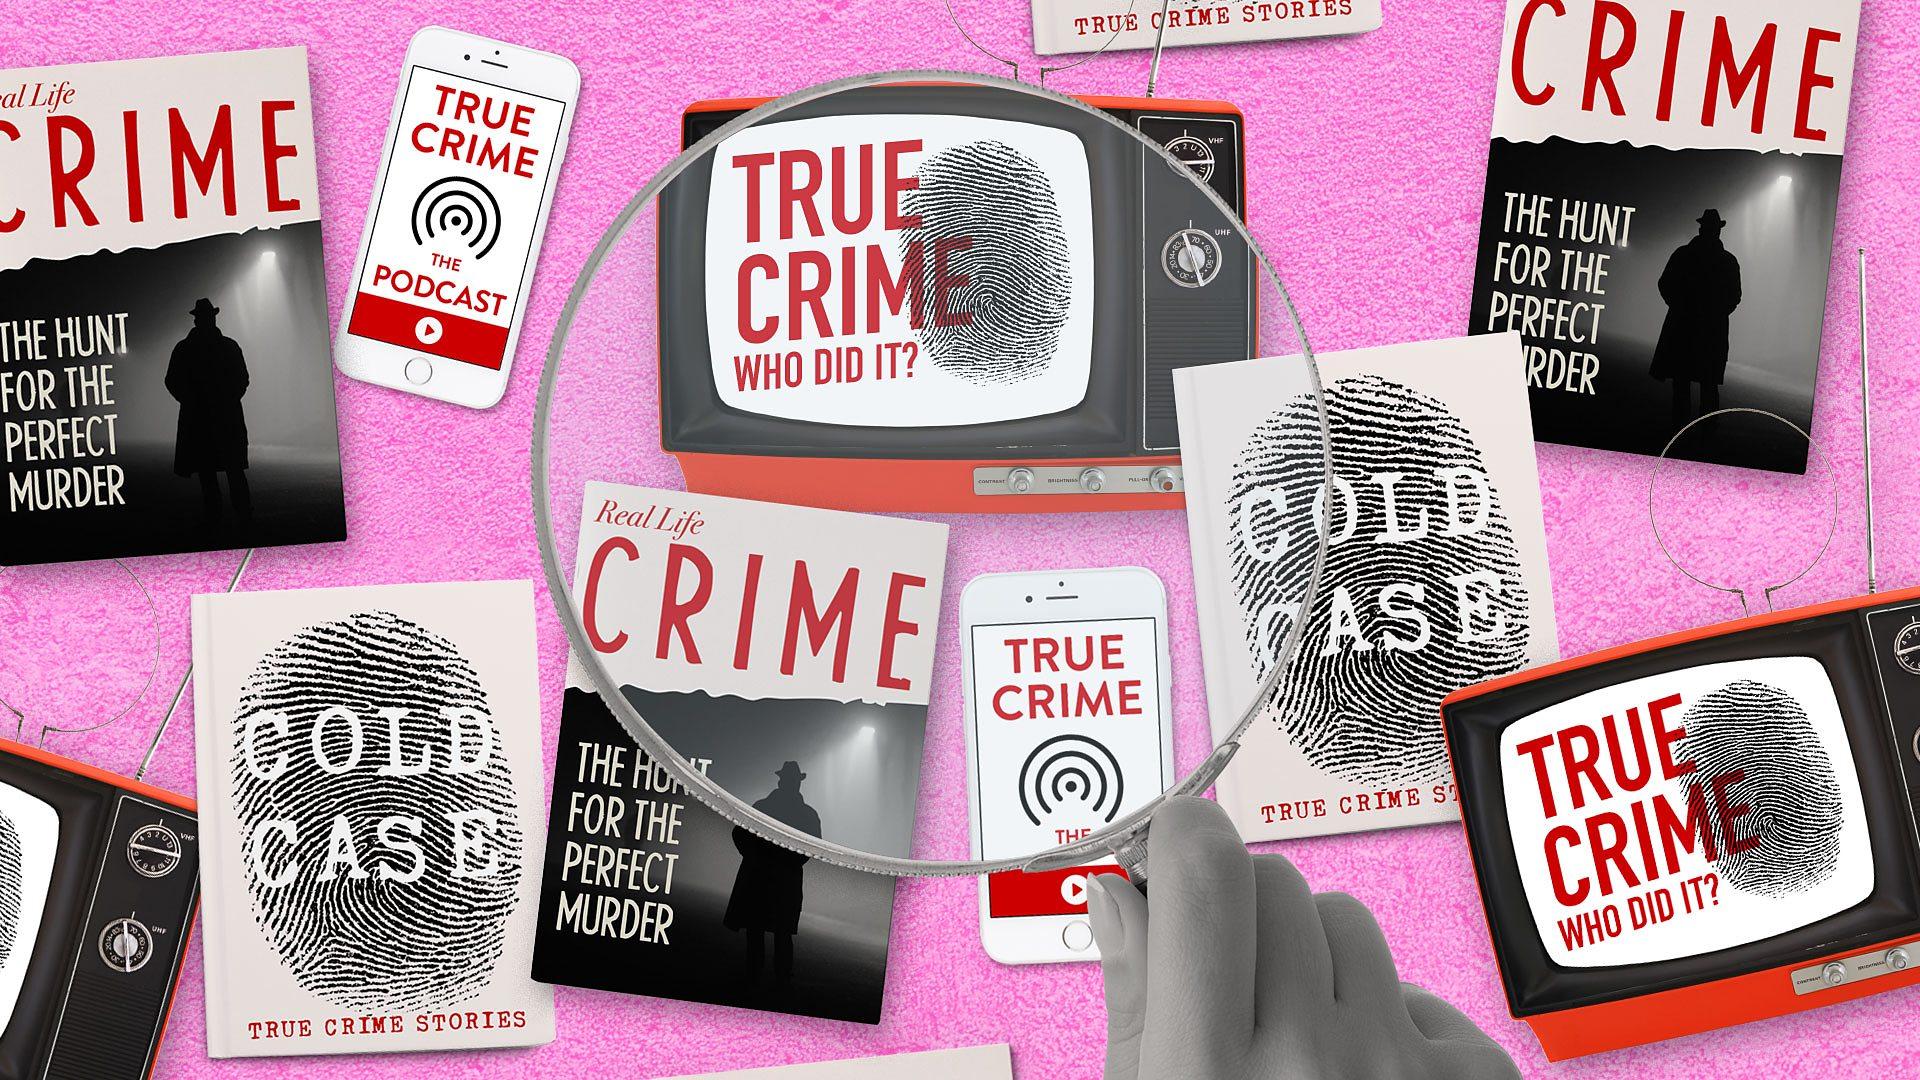 Best True Crime Documentaries To Watch On Netflix  Netflix Tudum